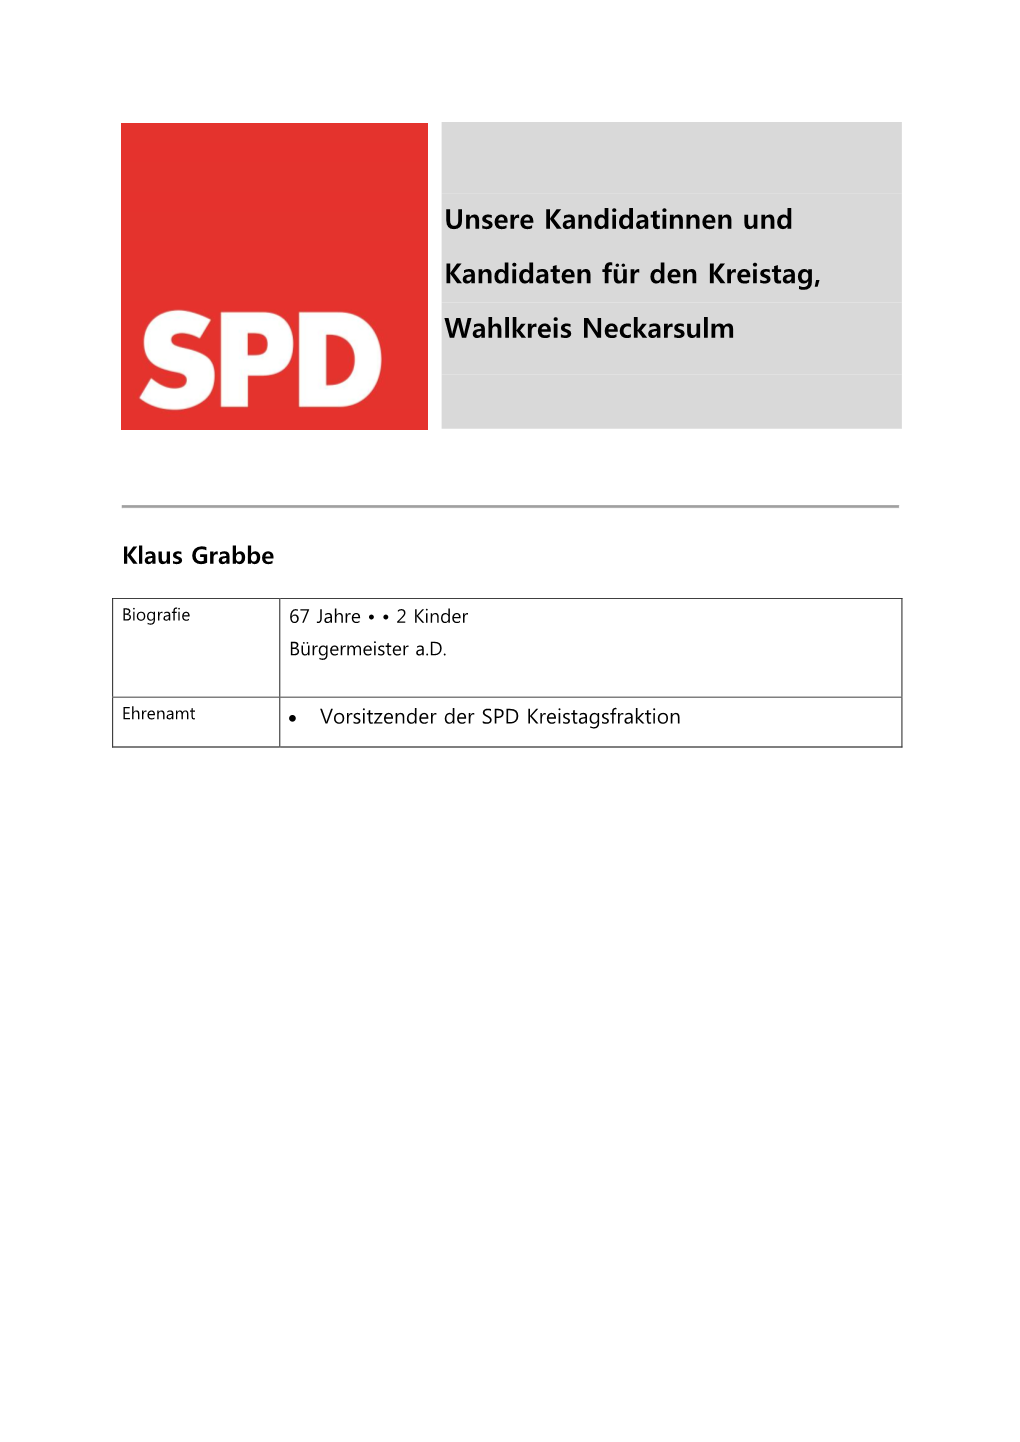 Unsere Kandidatinnen Und Kandidaten Für Den Kreistag, Wahlkreis Neckarsulm